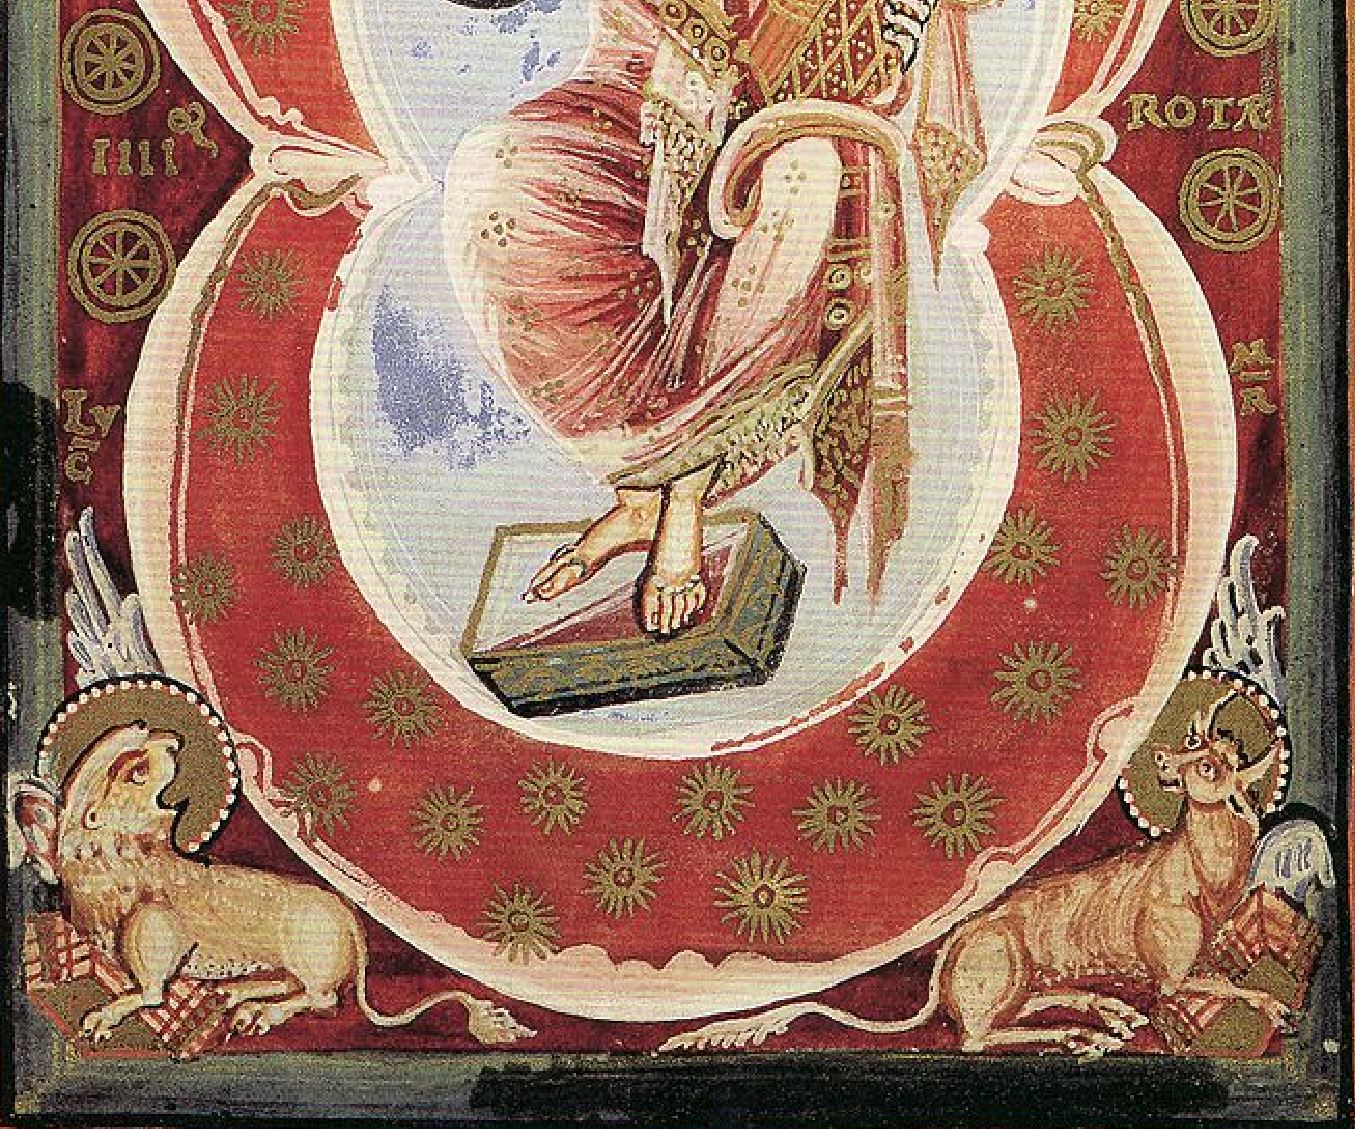 1000-20 Hitda-Codex Dieu en majeste Hochschulbibliothek Darmstadt Hs. 1640, fol. 7r detail